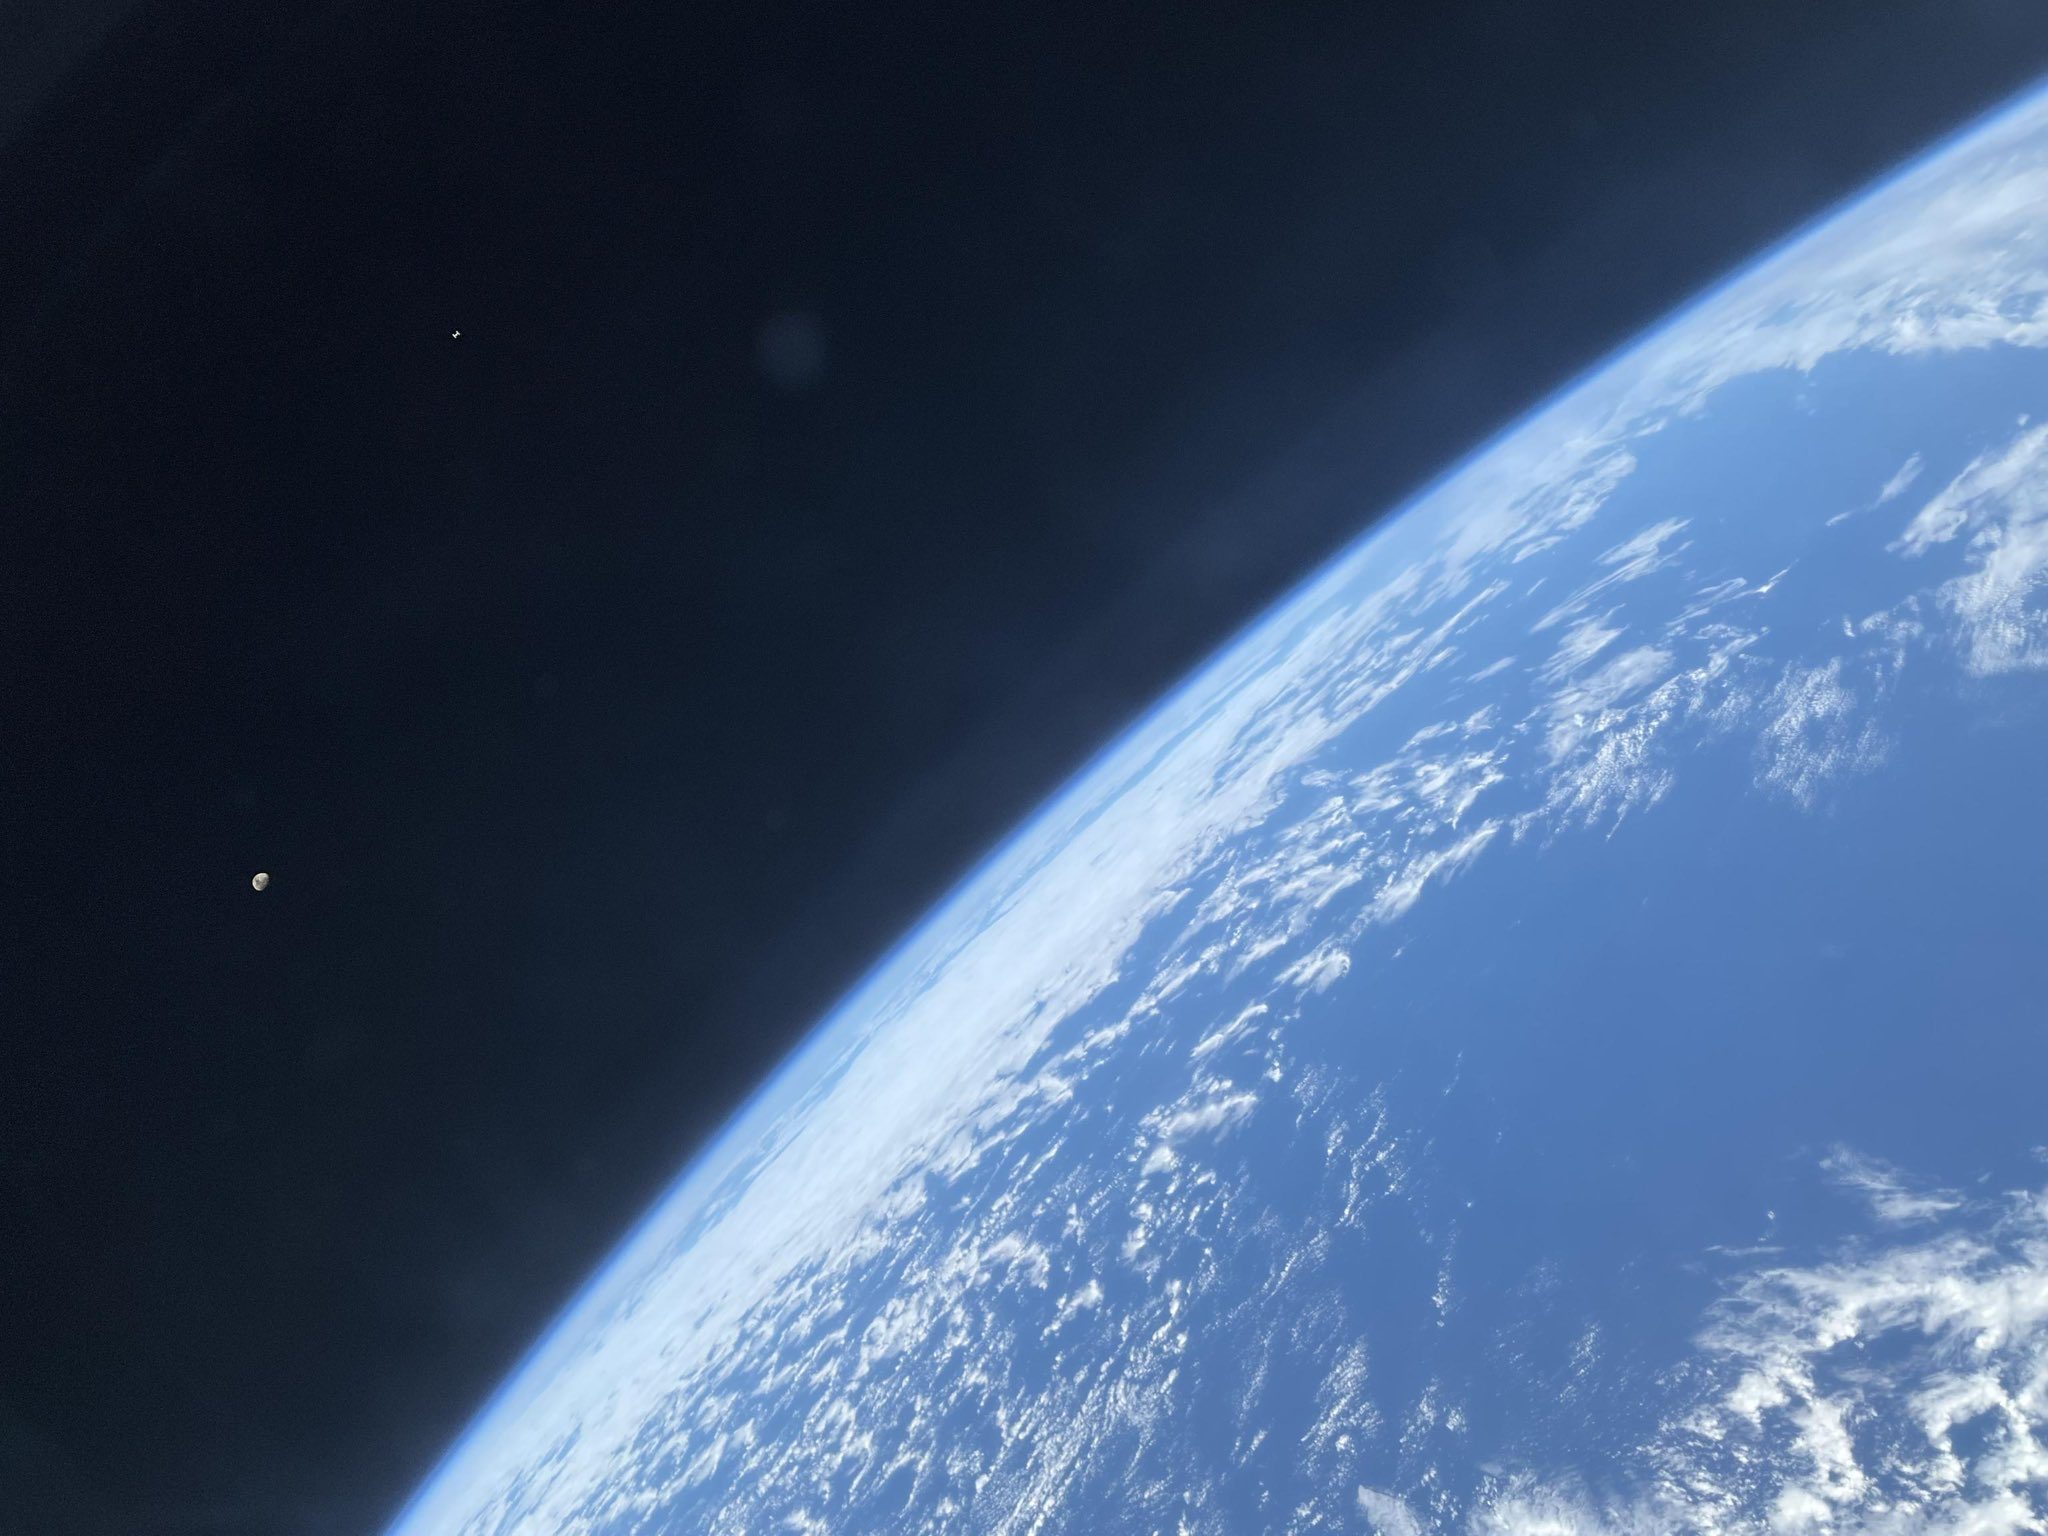 Земля, Місяць та крихітна МКС на фото астронавта Crew-7